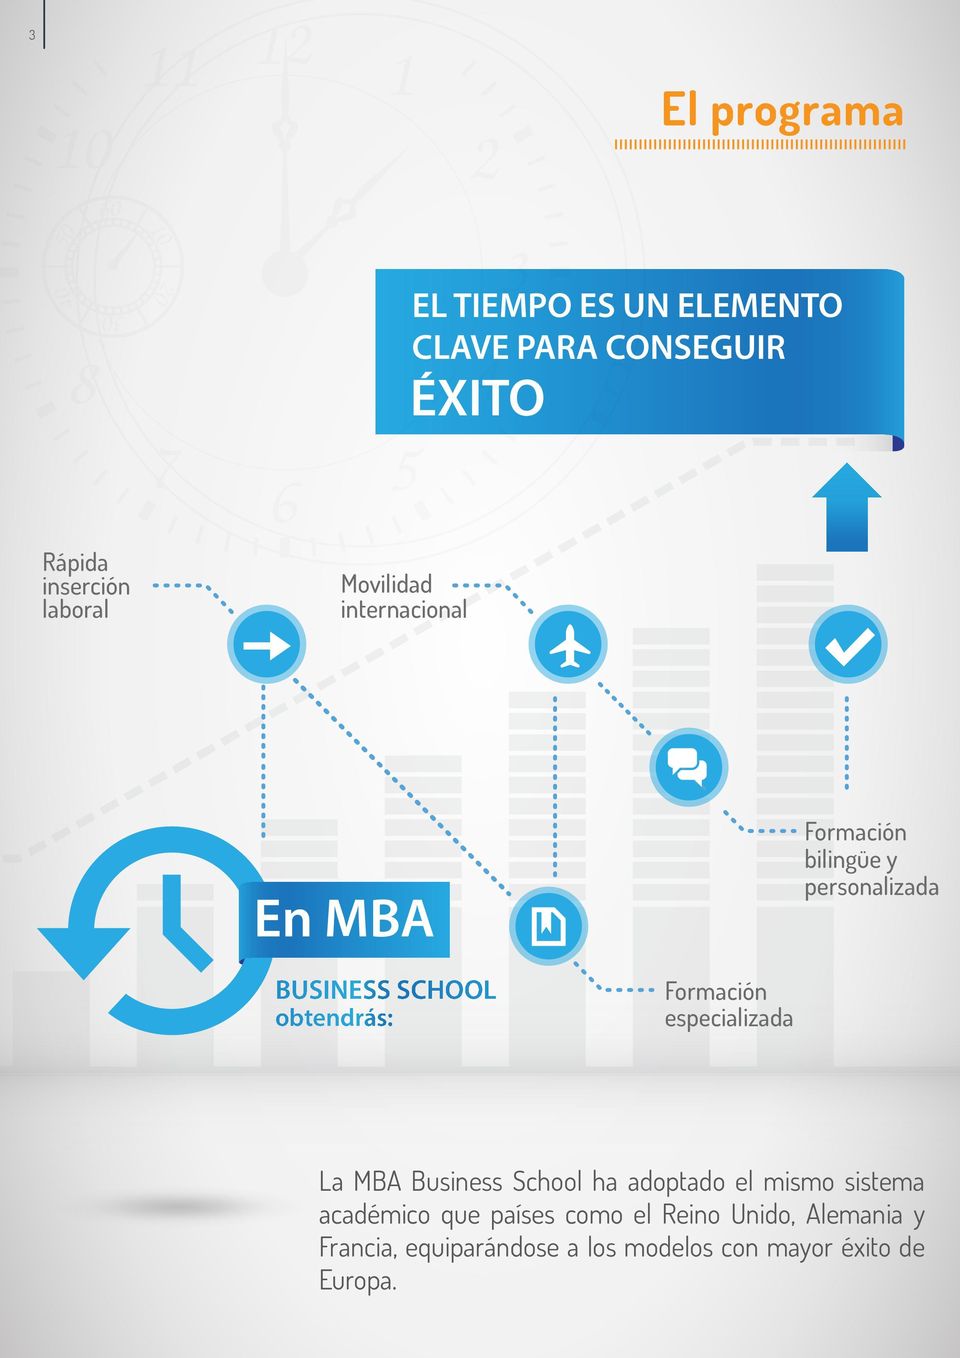 Formación especializada La MBA Business School ha adoptado el mismo sistema académico que